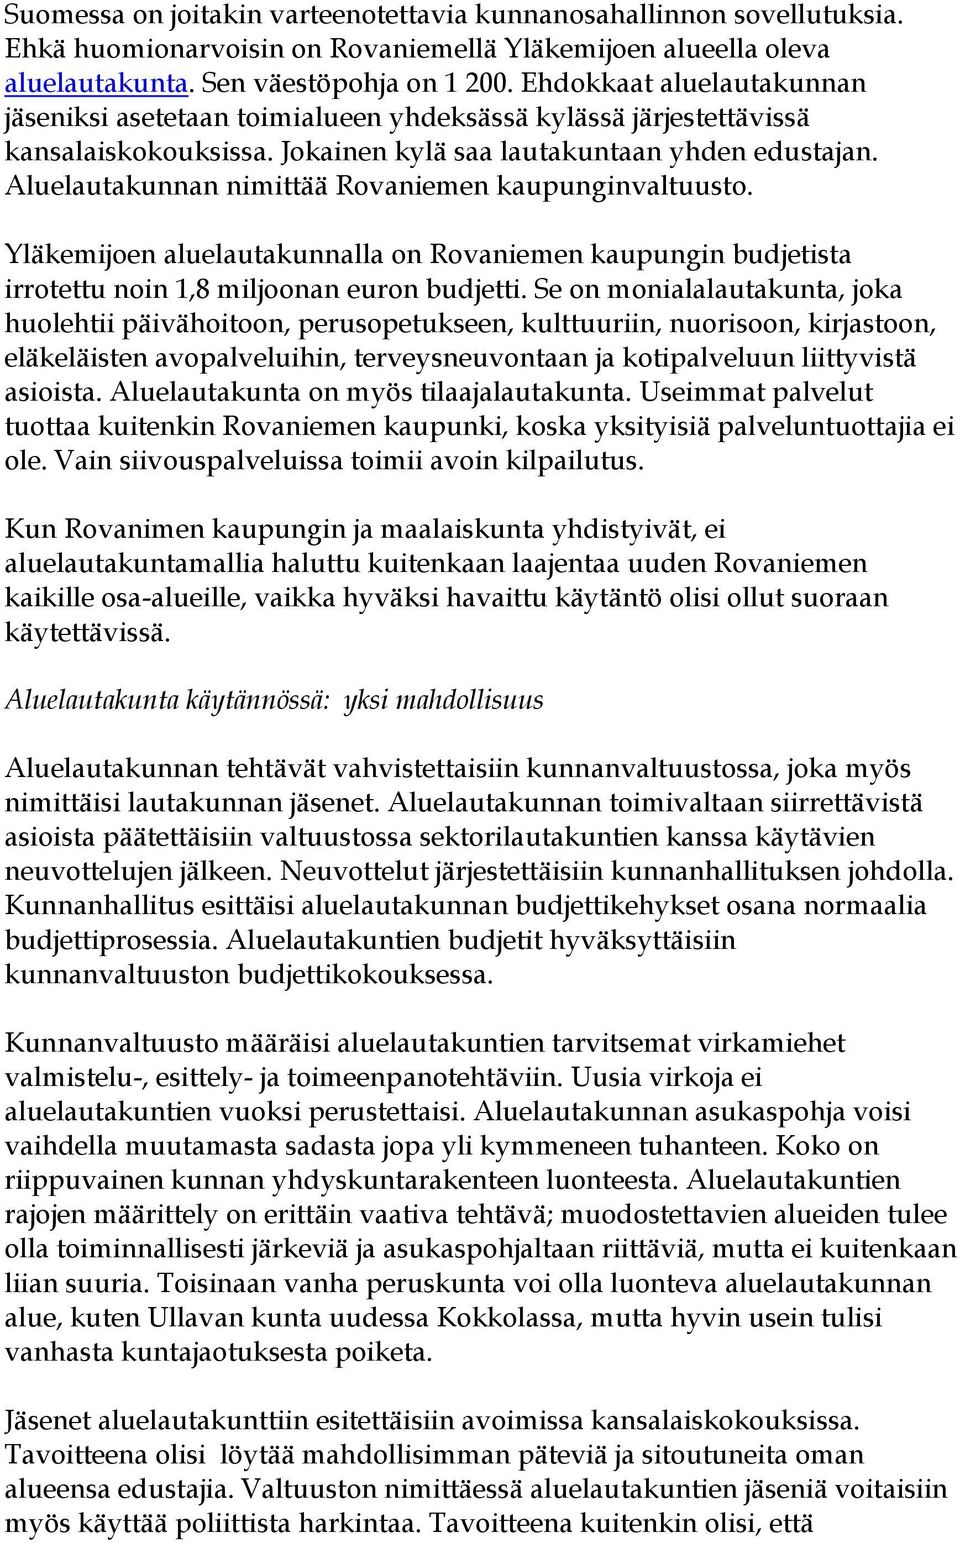 Aluelautakunnan nimittää Rovaniemen kaupunginvaltuusto. Yläkemijoen aluelautakunnalla on Rovaniemen kaupungin budjetista irrotettu noin 1,8 miljoonan euron budjetti.